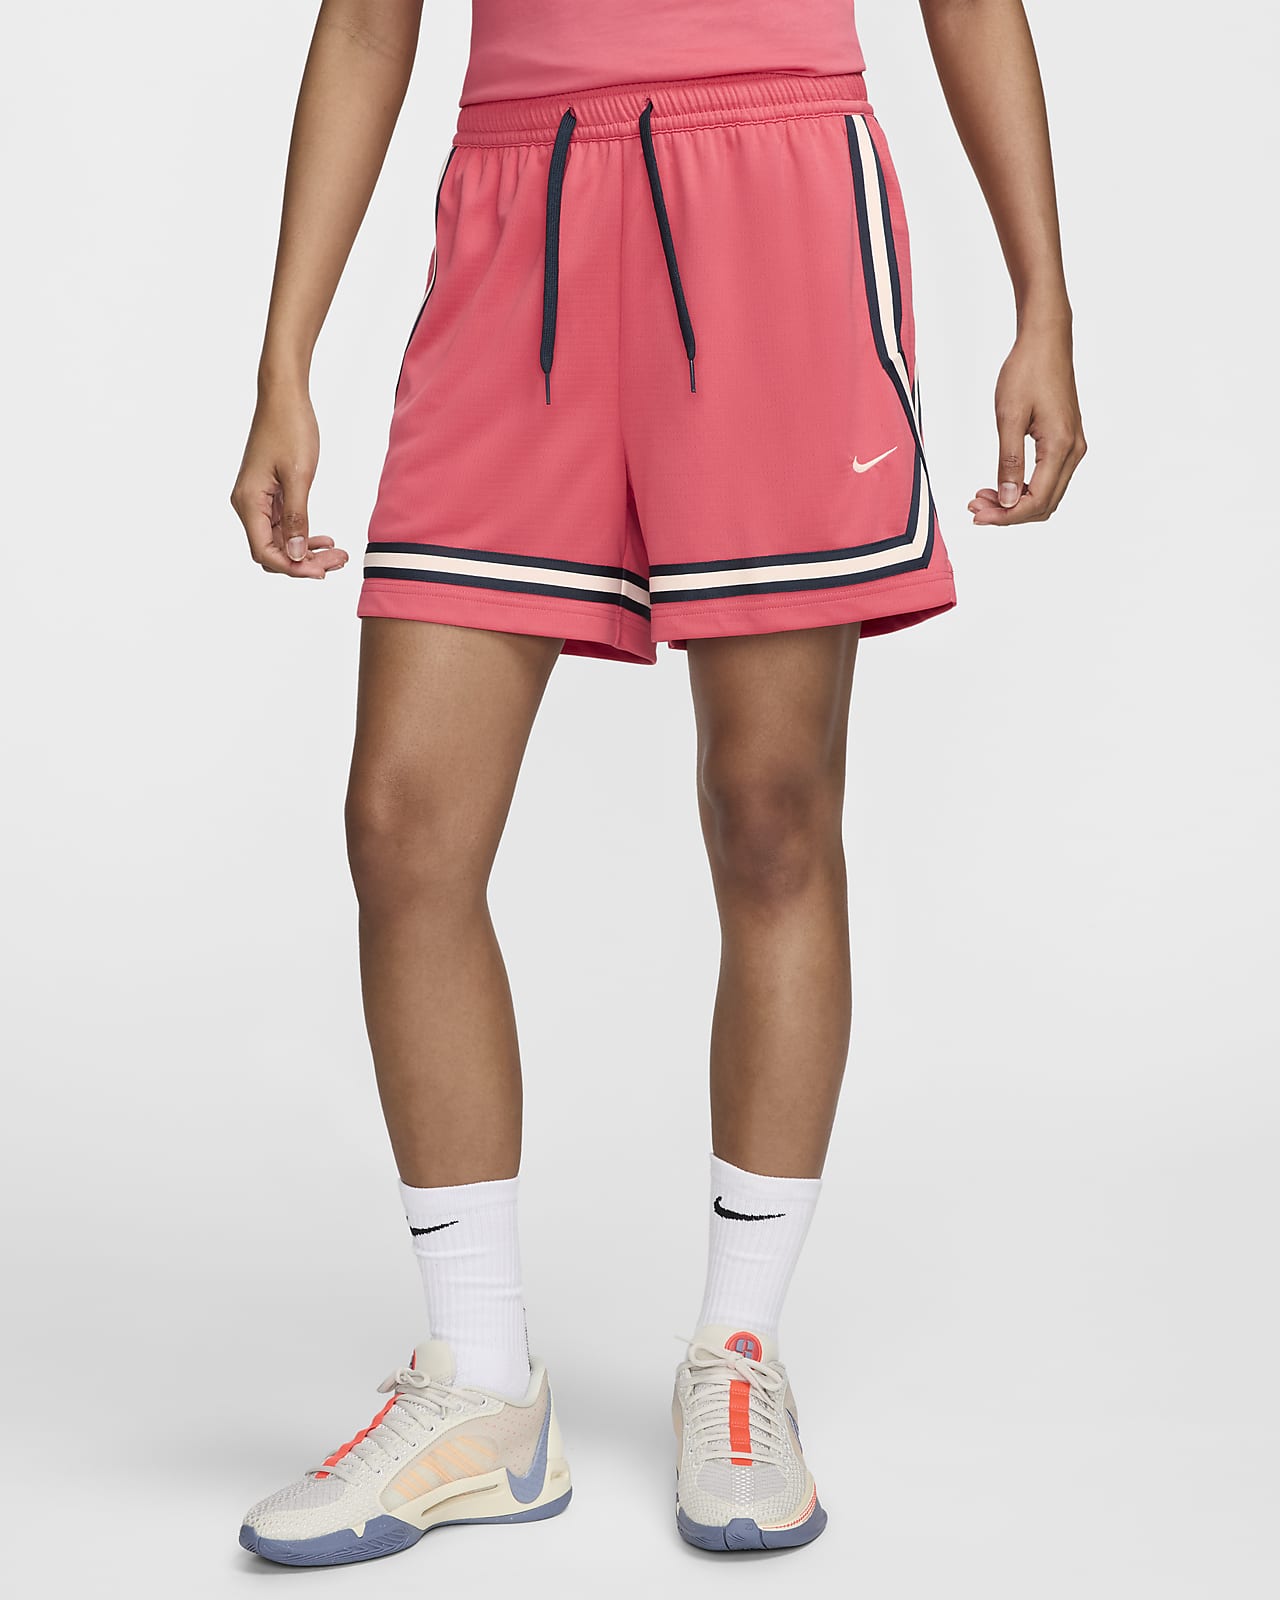 Shorts de básquetbol Dri-FIT de 13 cm para mujer Nike Crossover